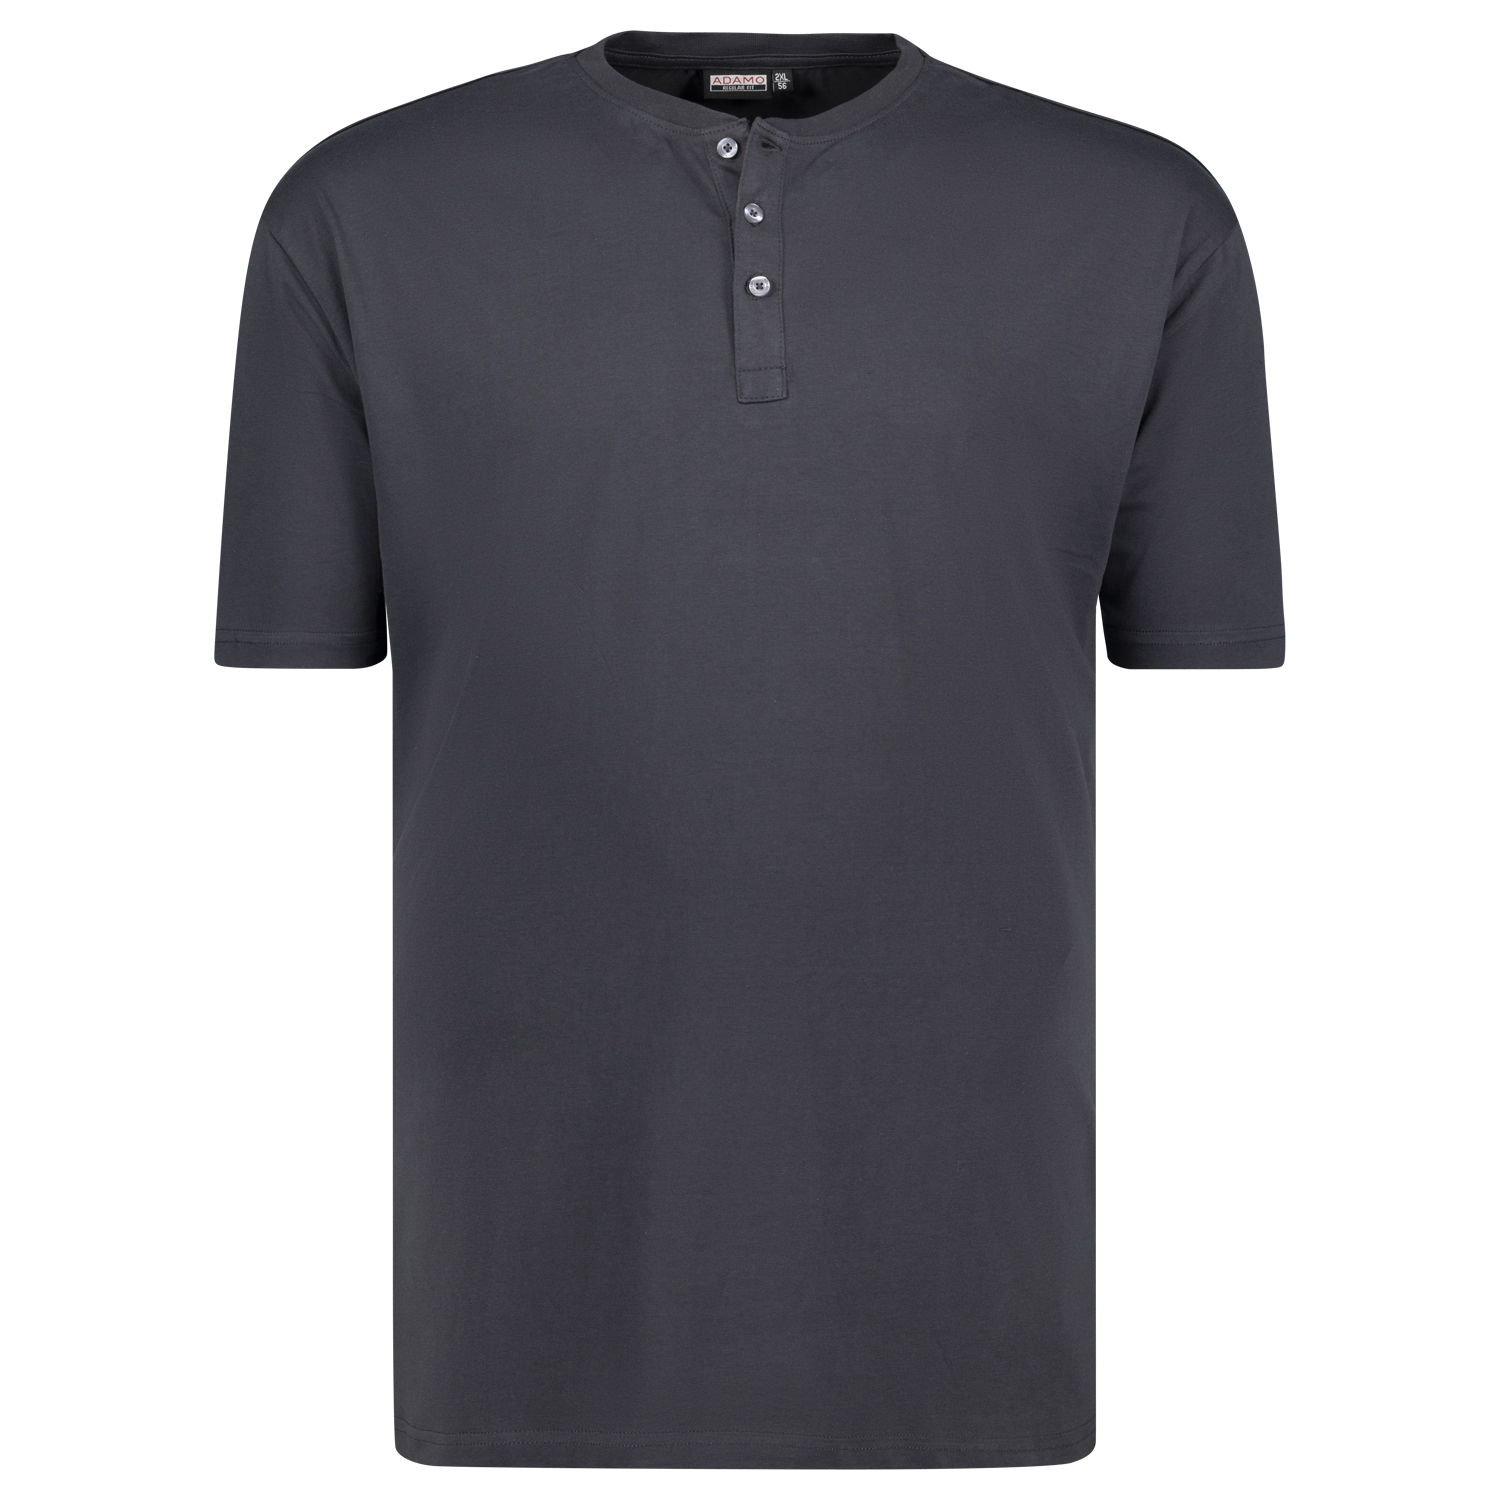 Herren Serafino T-Shirt mit Knopfleiste REGULAR FIT von Adamo Serie Silas in Übergrößen bis 10XL